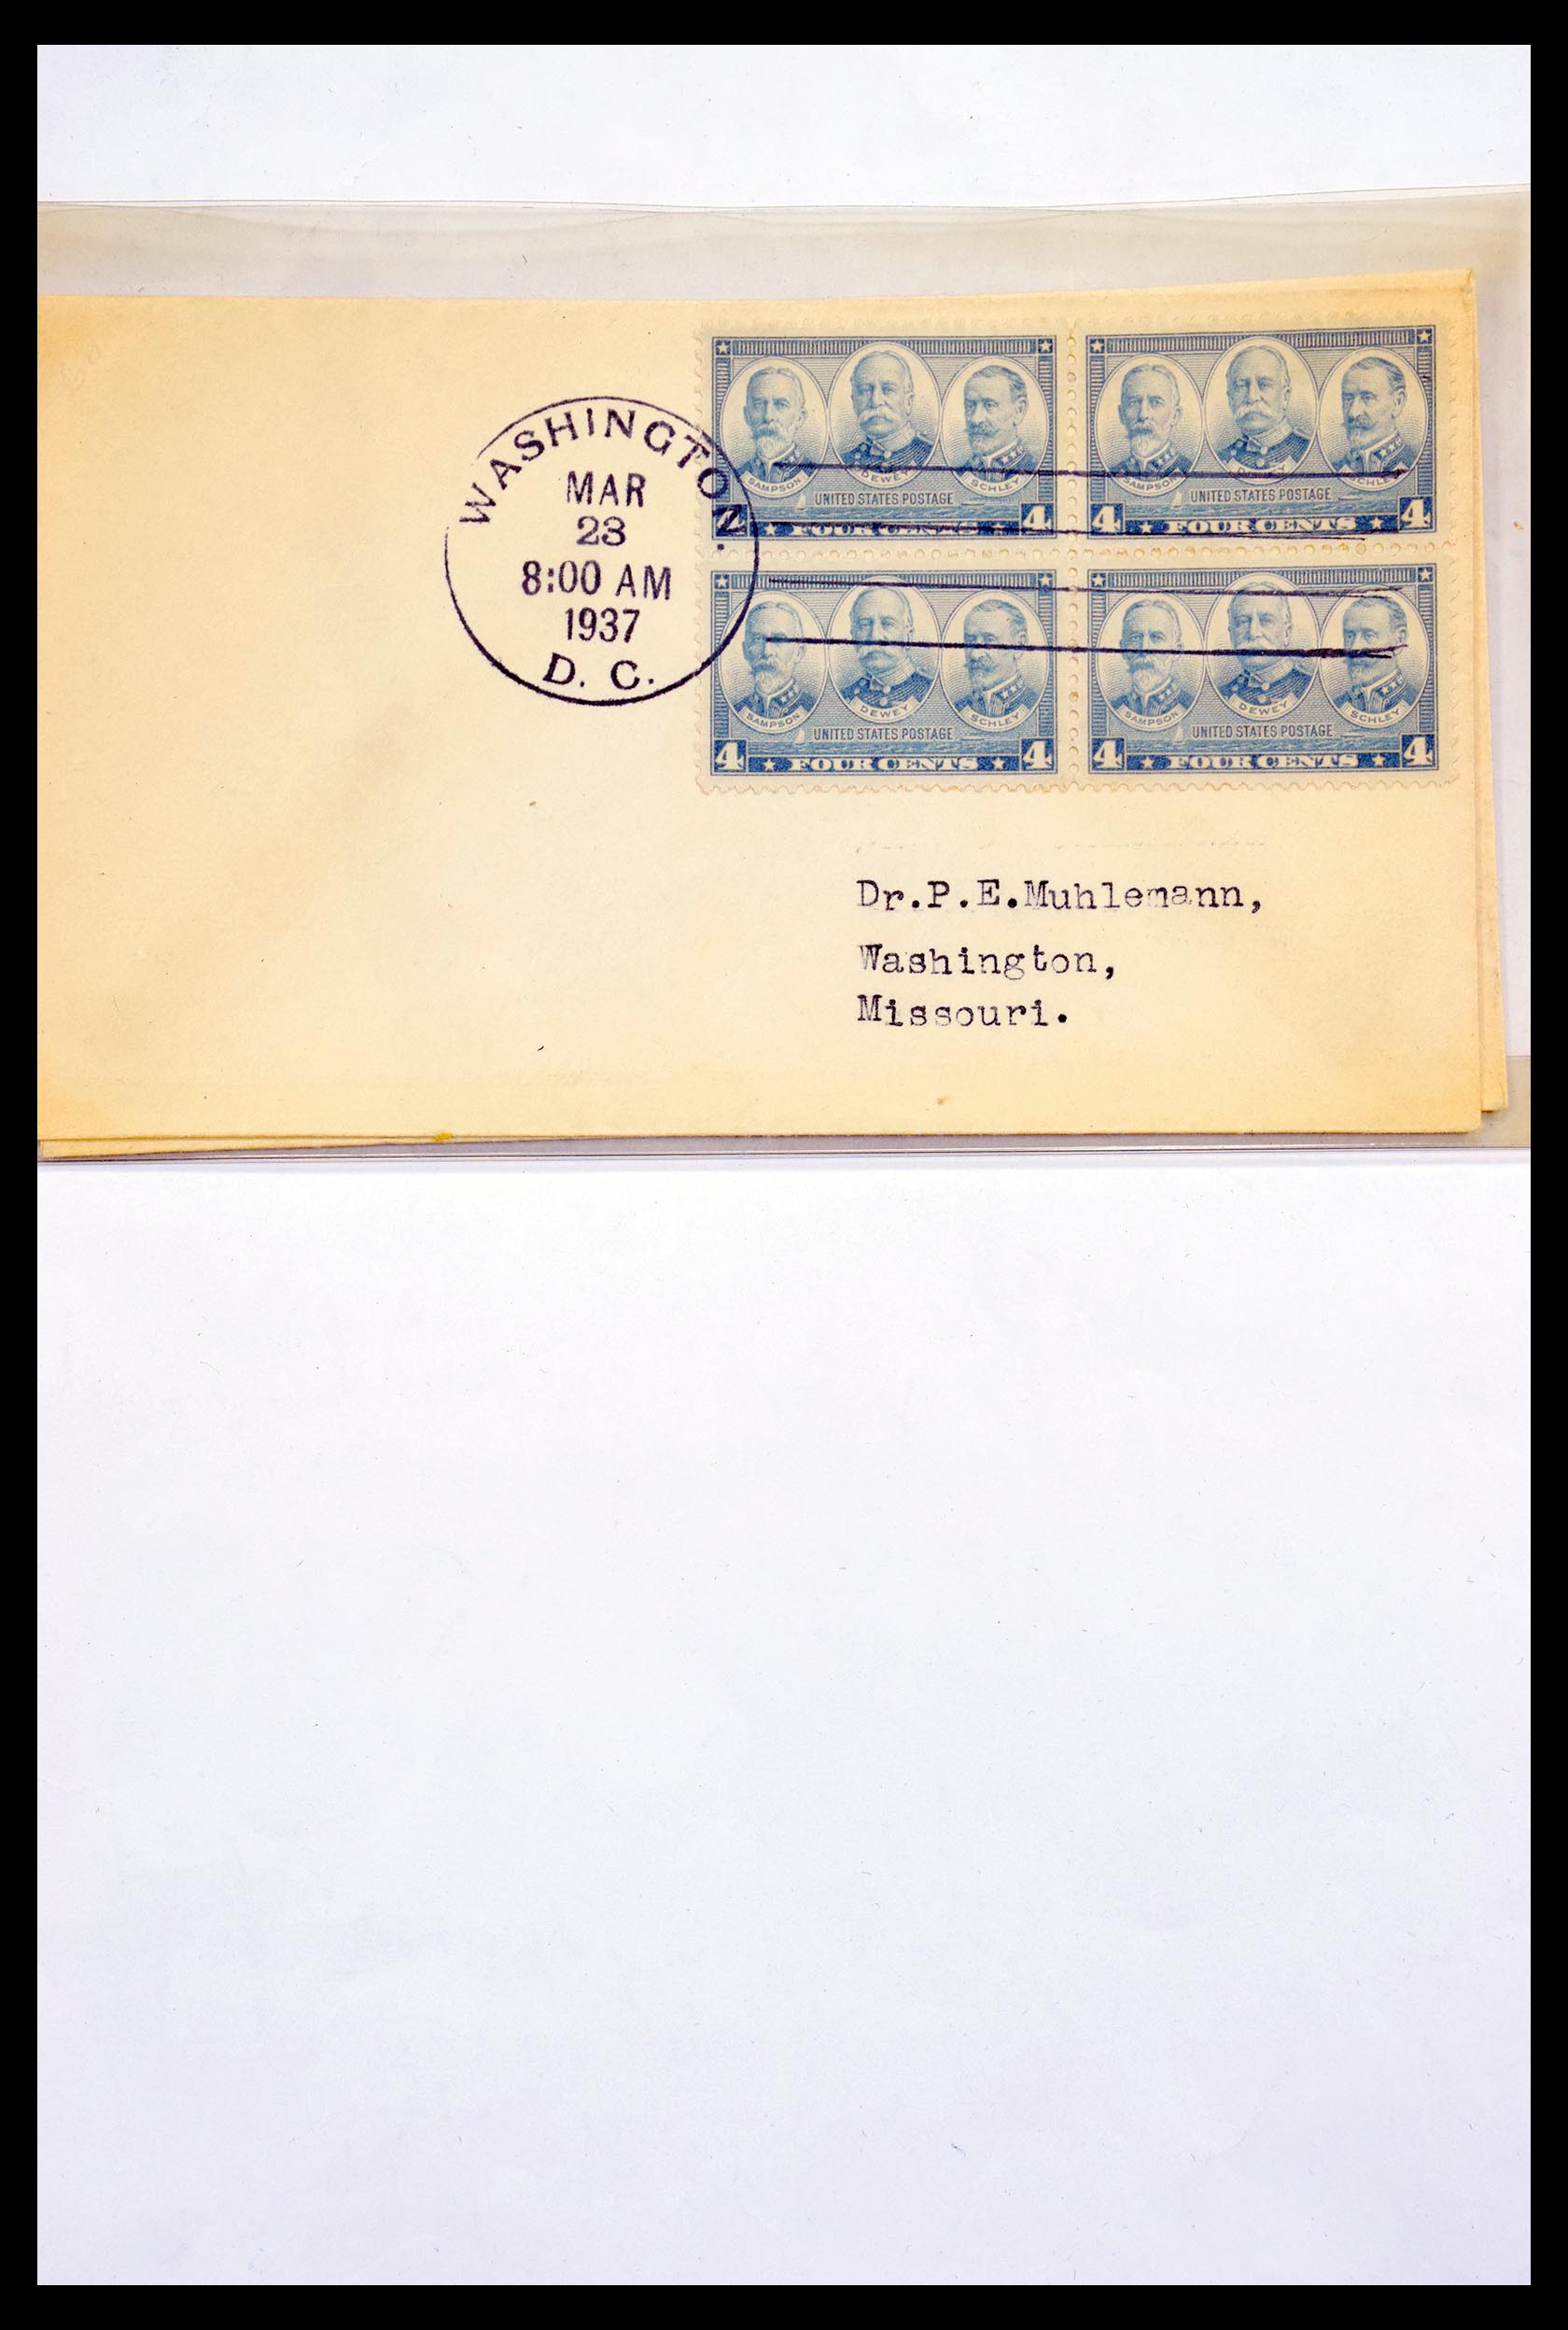 30341 287 - 30341 USA scheepspost brieven 1930-1970.